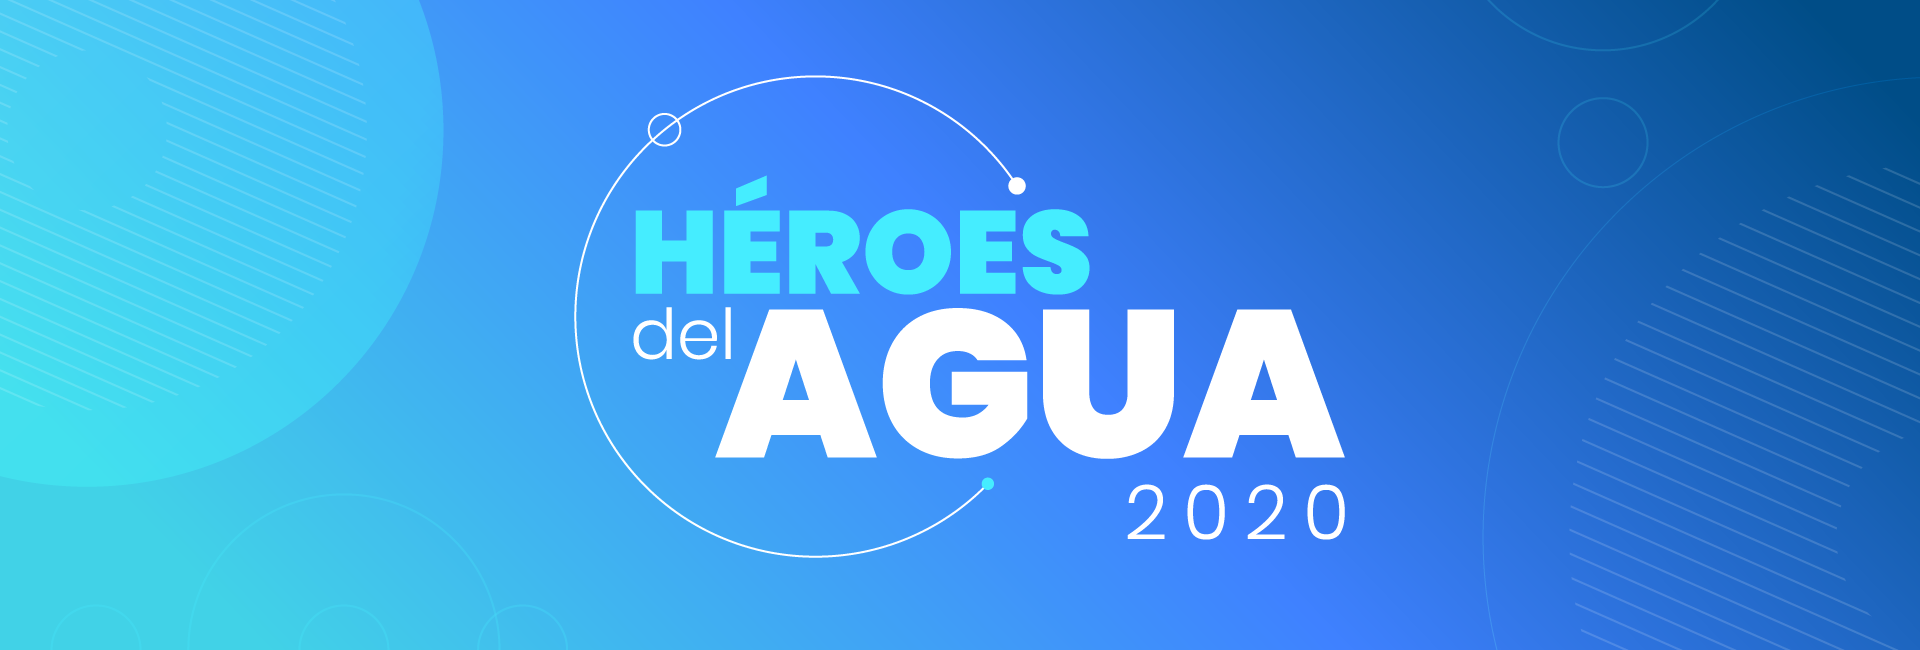 Héroes del Agua 2020